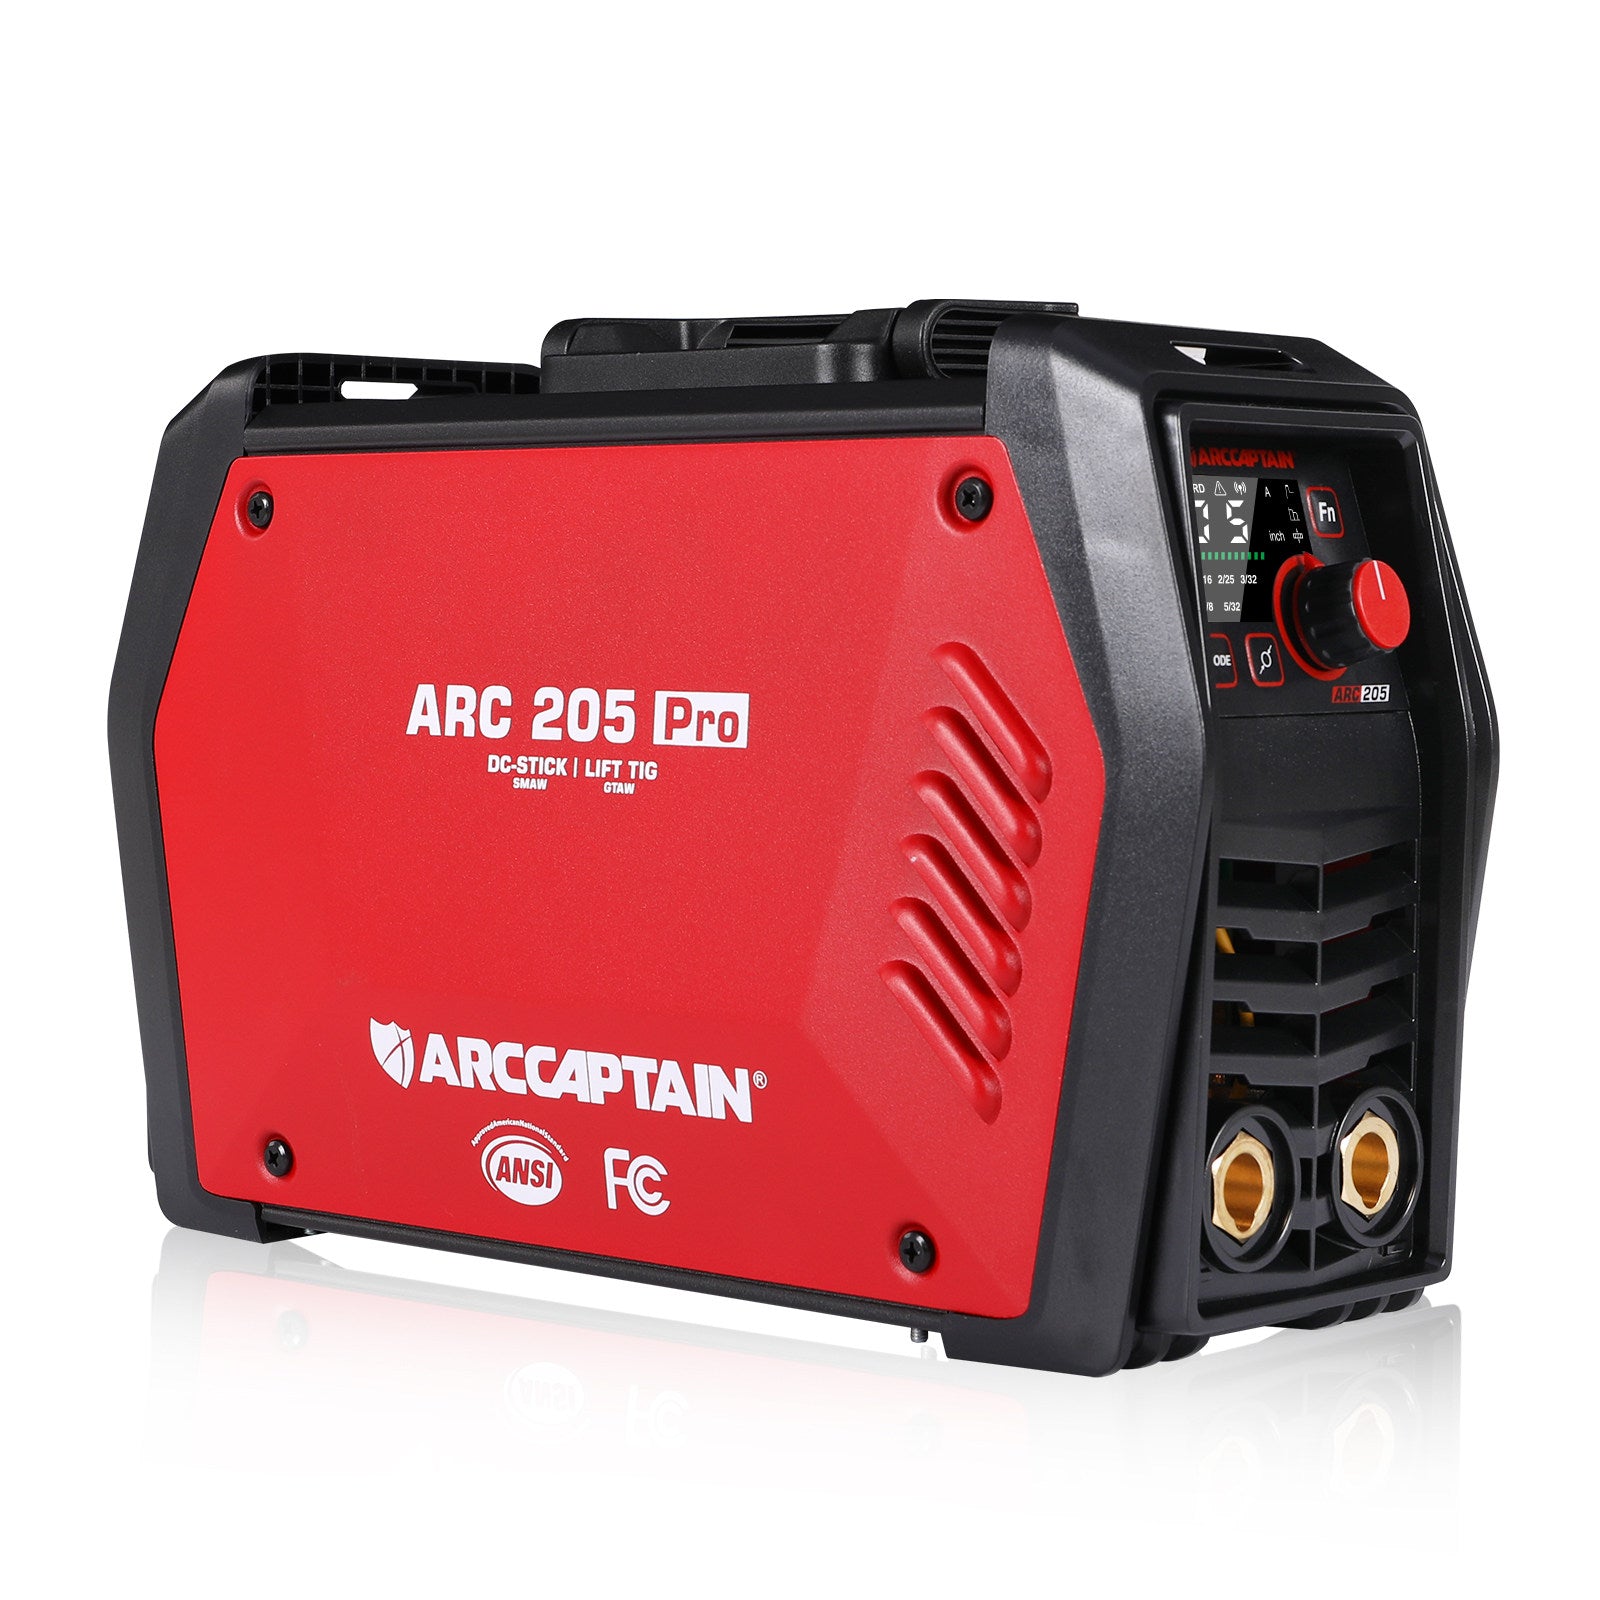 Arccaptain iControl ARC205 Pro Dual Voltage Smart SYN Stick Welder Pre-sale